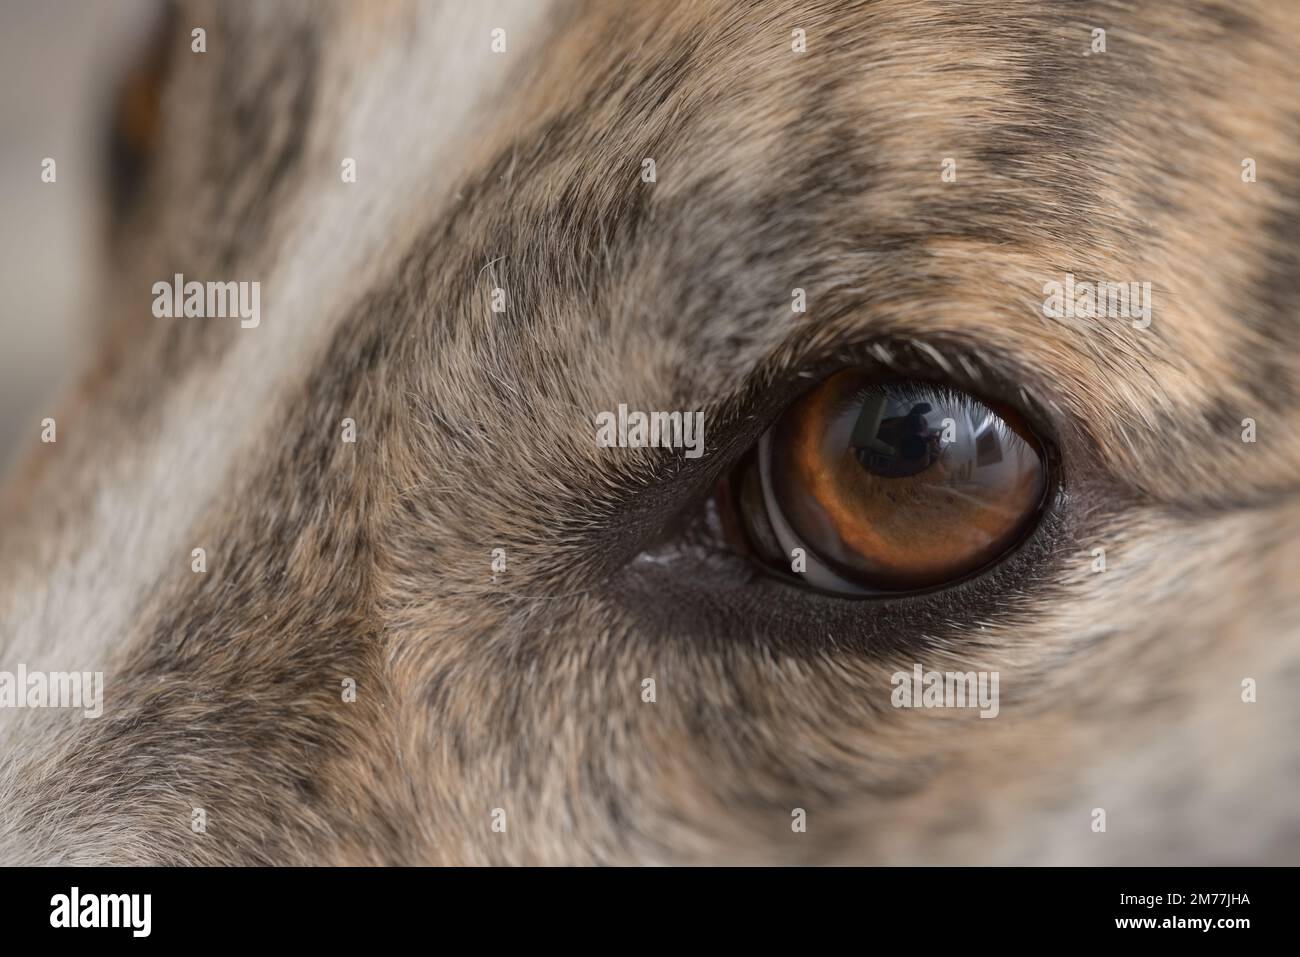 Super-Makro-Nahaufnahme eines Hundes mit linkem Auge. Einzelne Haarsträhnen und Hautschuppen sind sichtbar. Schönes großes braunes Auge mit lebhafter Iris Stockfoto